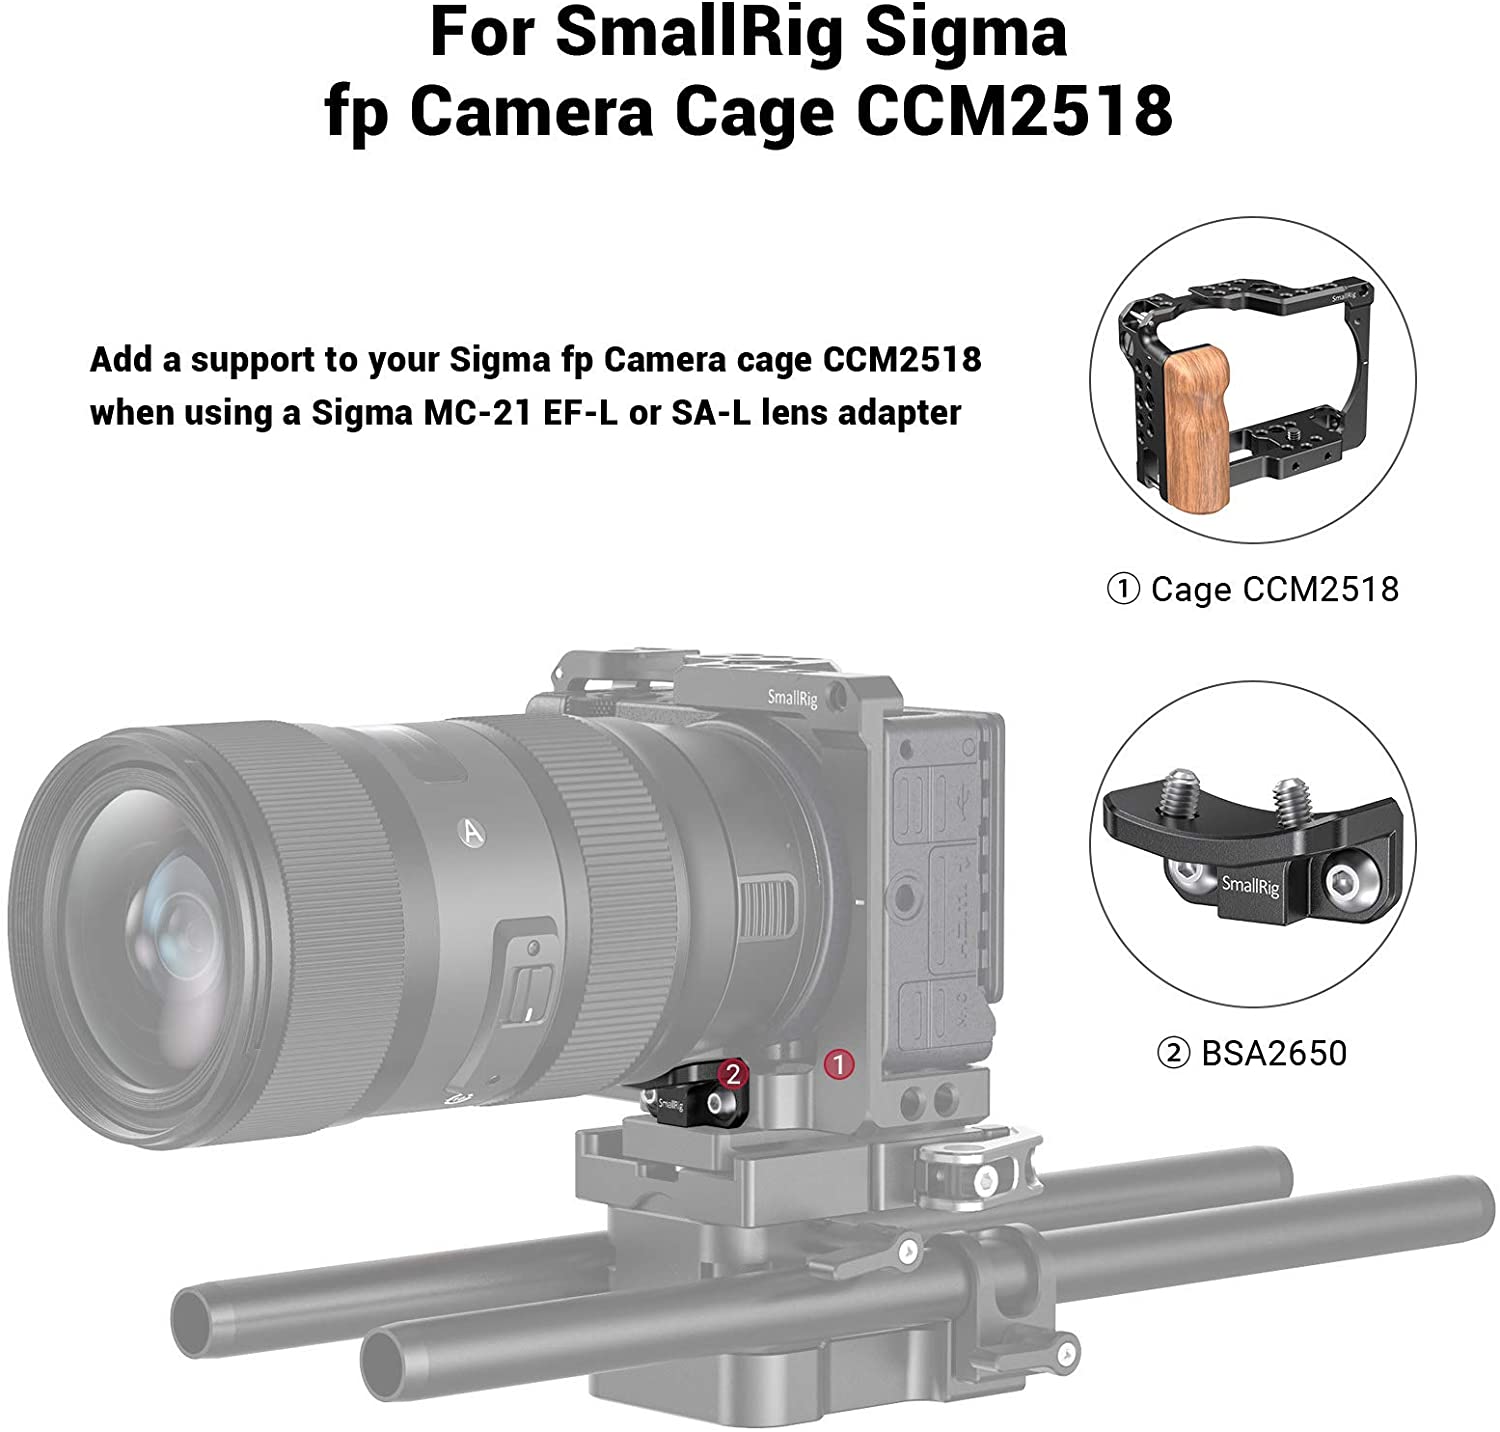 Ngàm Gắn Lens Máy Ảnh Smallrig Sigma Fp Camera Lồng - Bsa2650